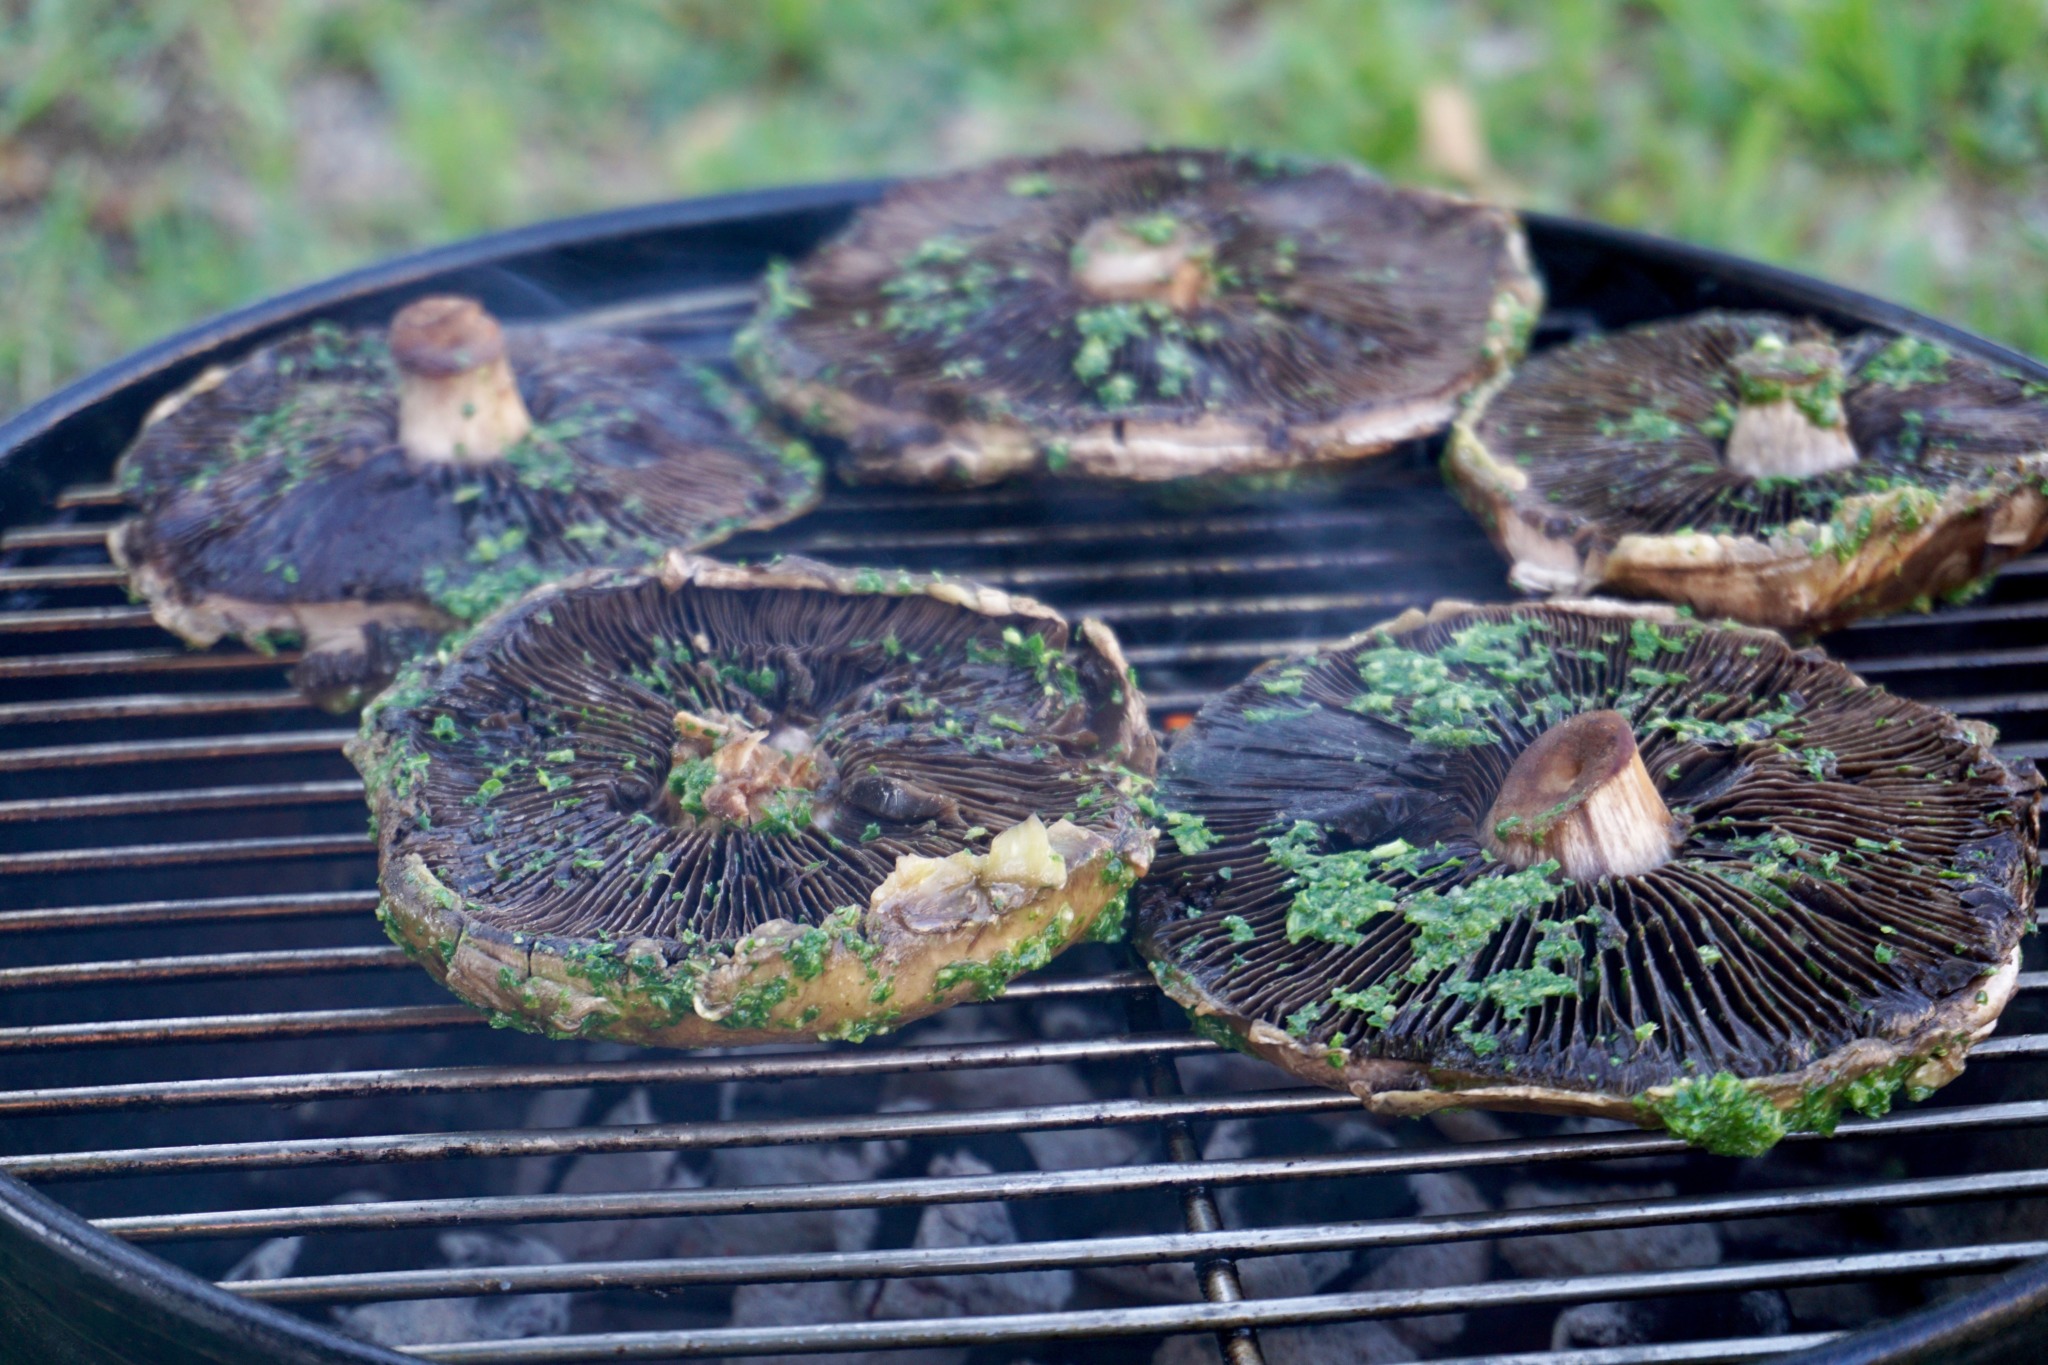 How to grill portobello mushrooms